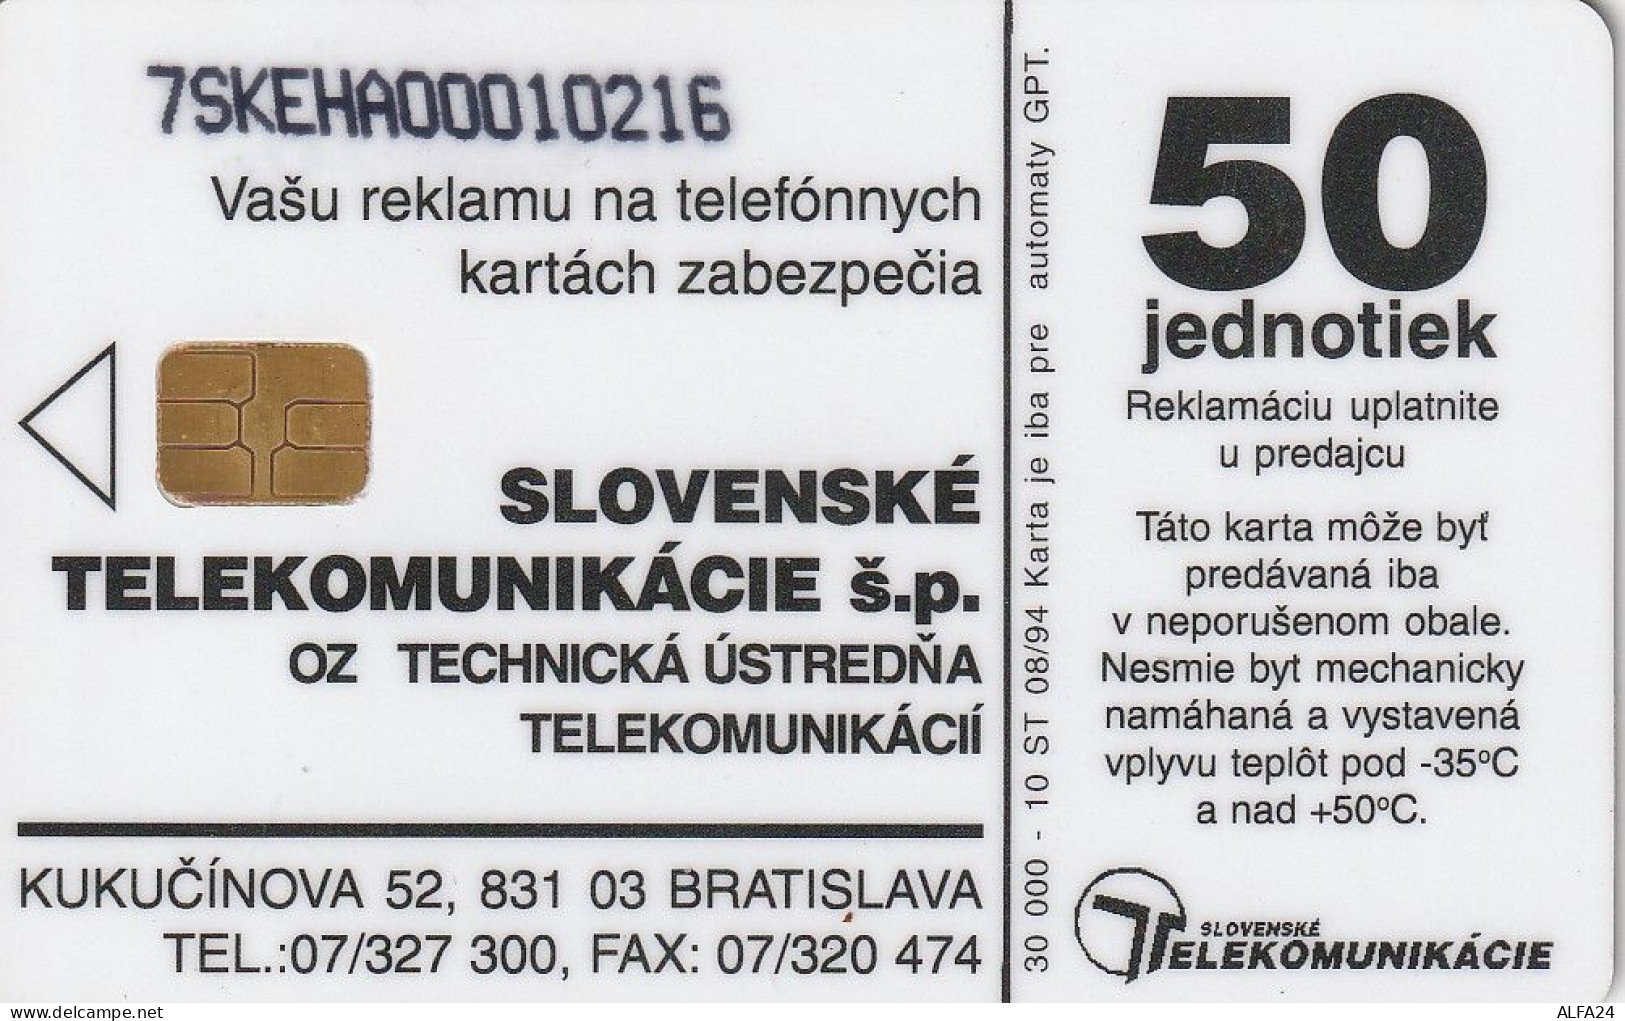 PHONE CARD SLOVACCHIA  (E3.13.5 - Slovakia